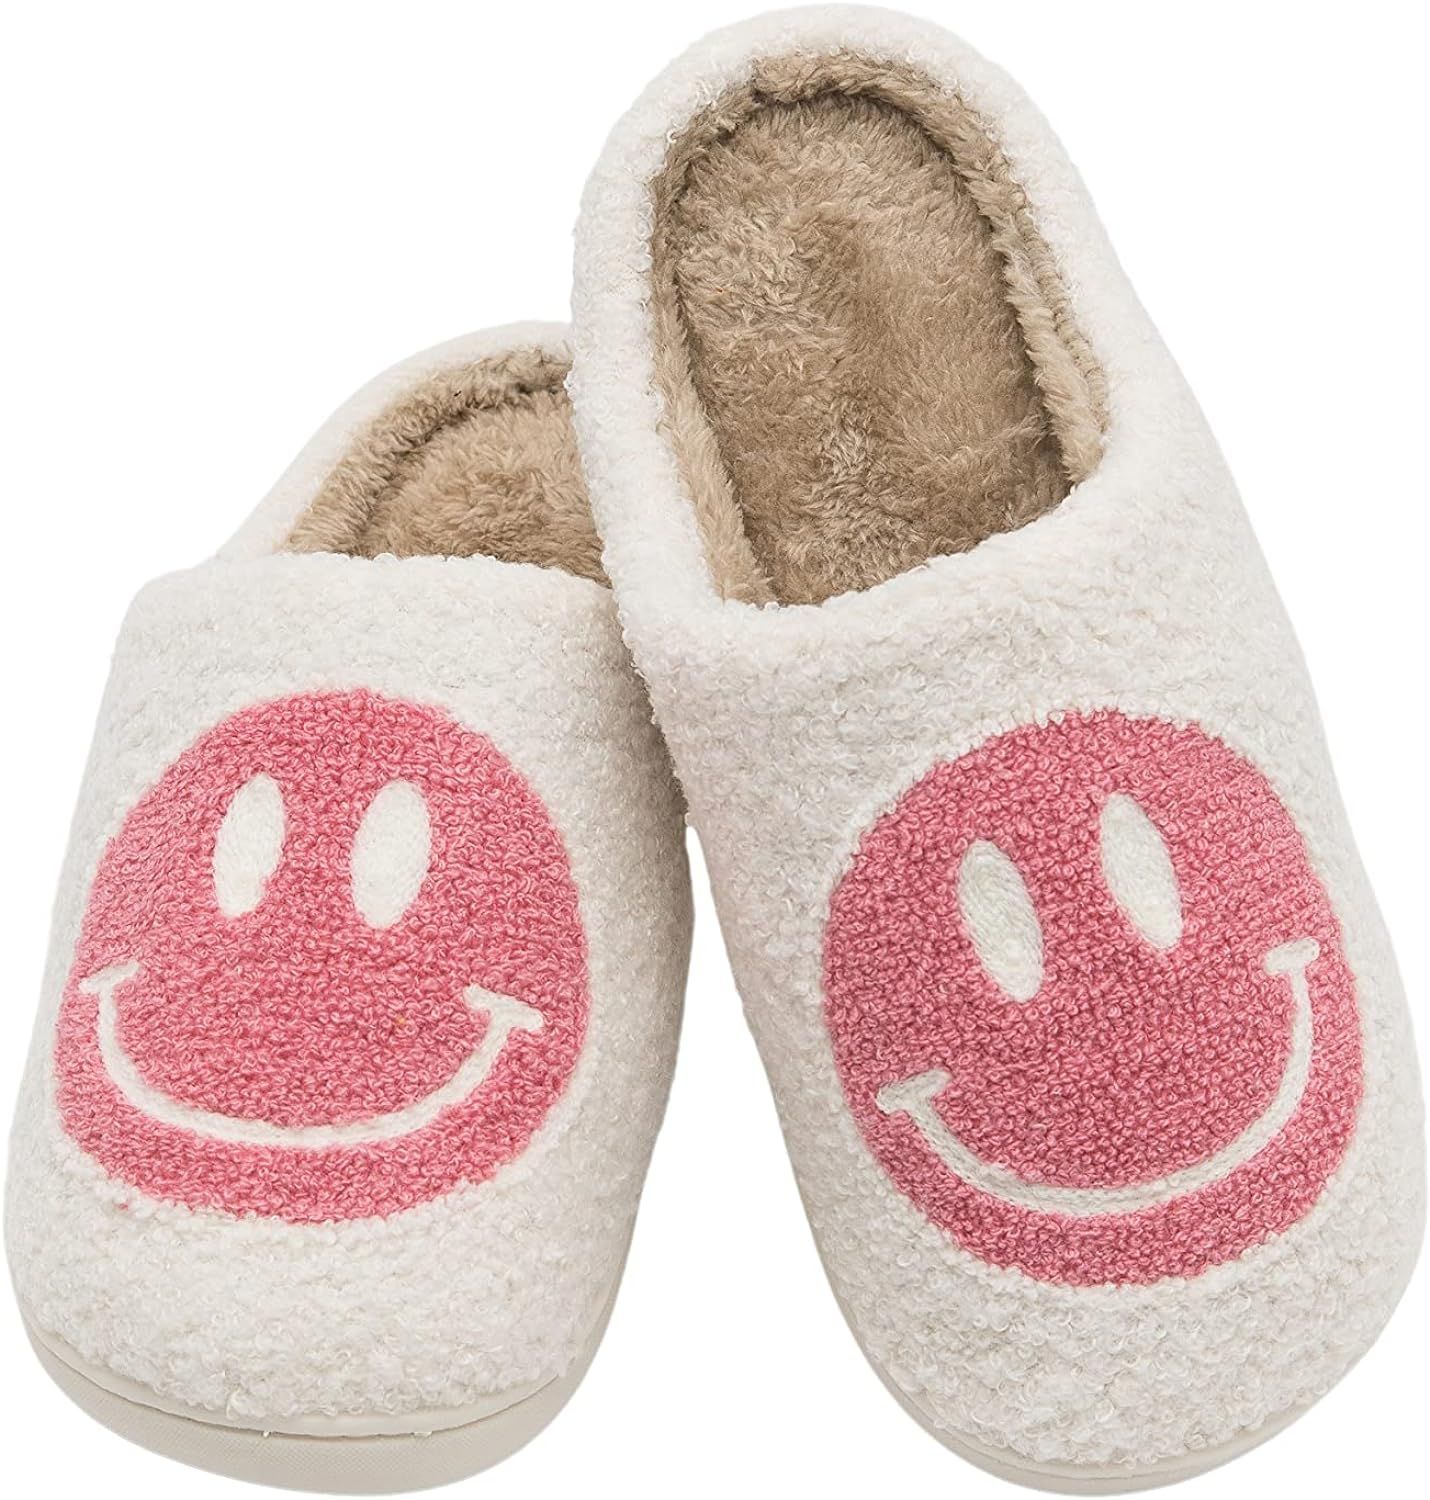 Retro Smiley Face Comfort Indoor Outdoor Cozy Trendy Slip-On Slipper | Amazon (US)